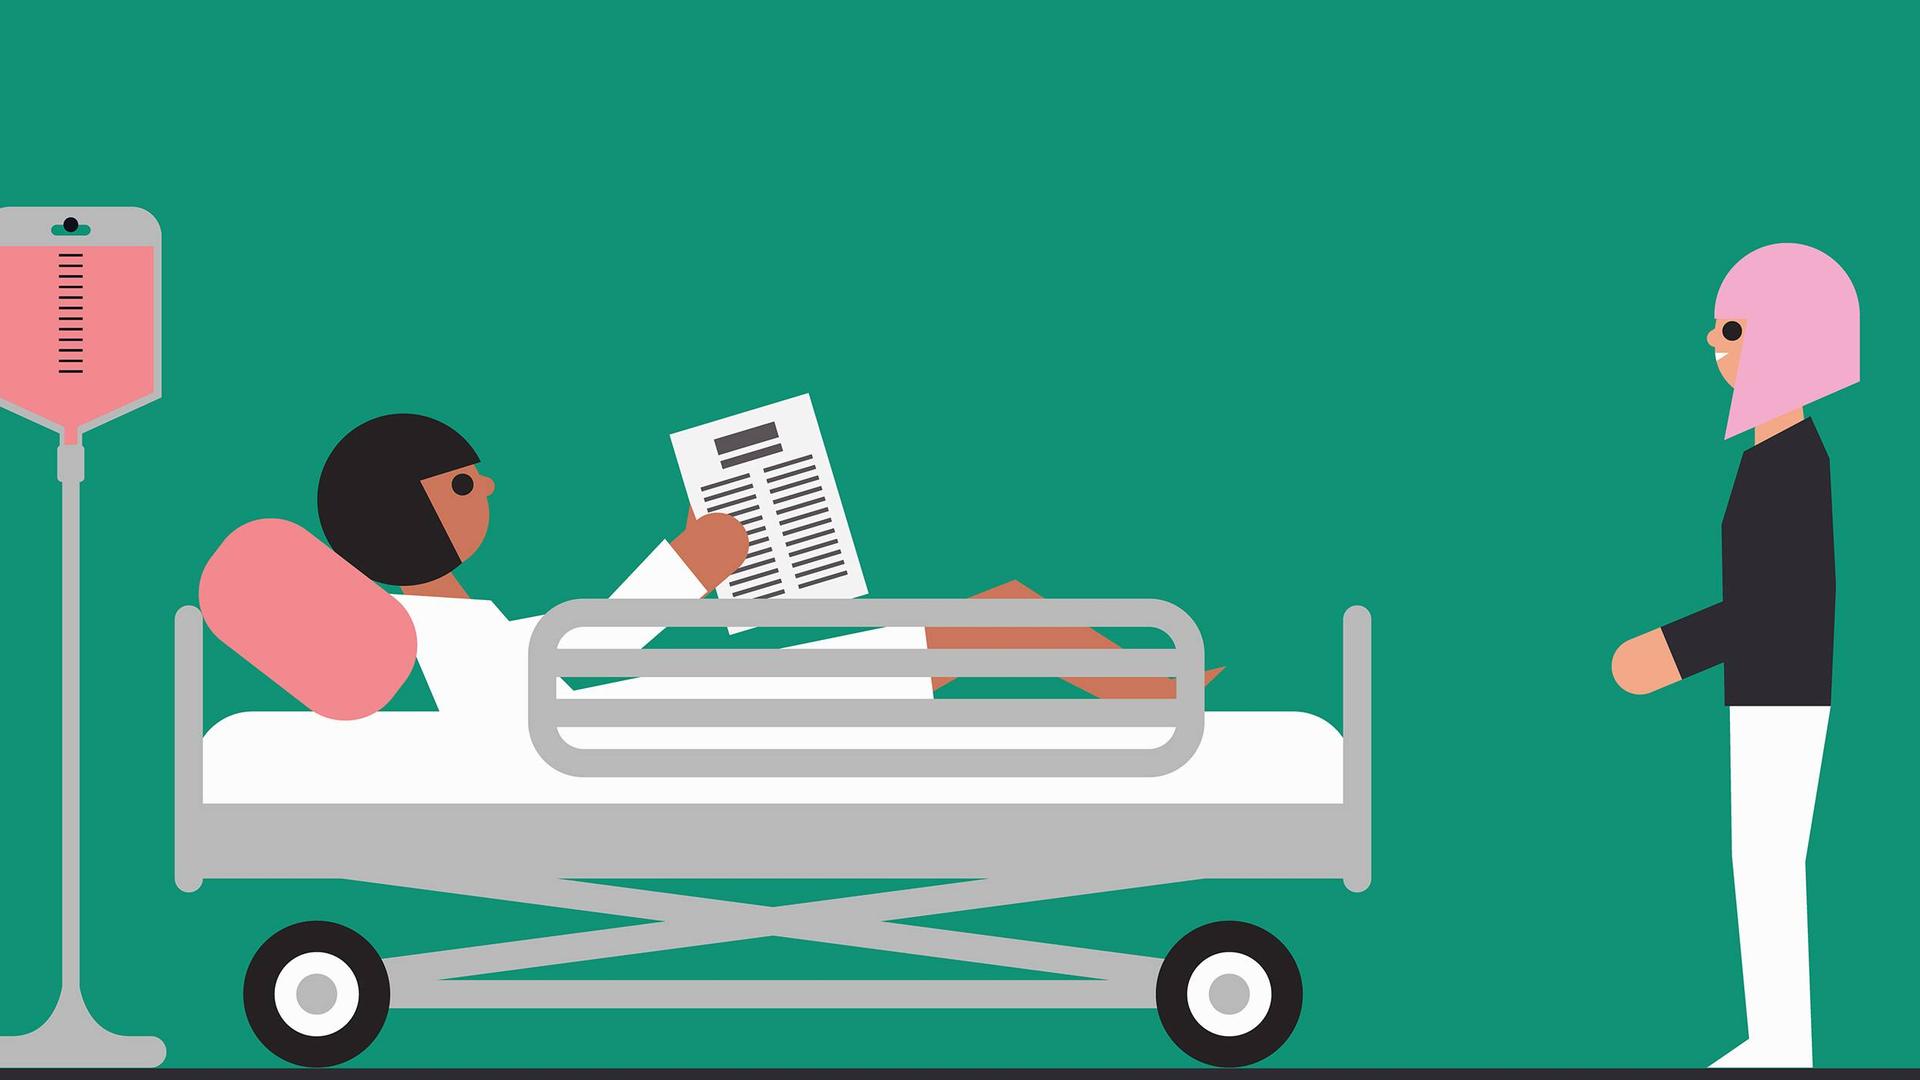 Montage von Szenen in einem Krankenhaus: Eine Patientin liegt lesend in einem Bett, eine andere Frau steht vor dem Bett.